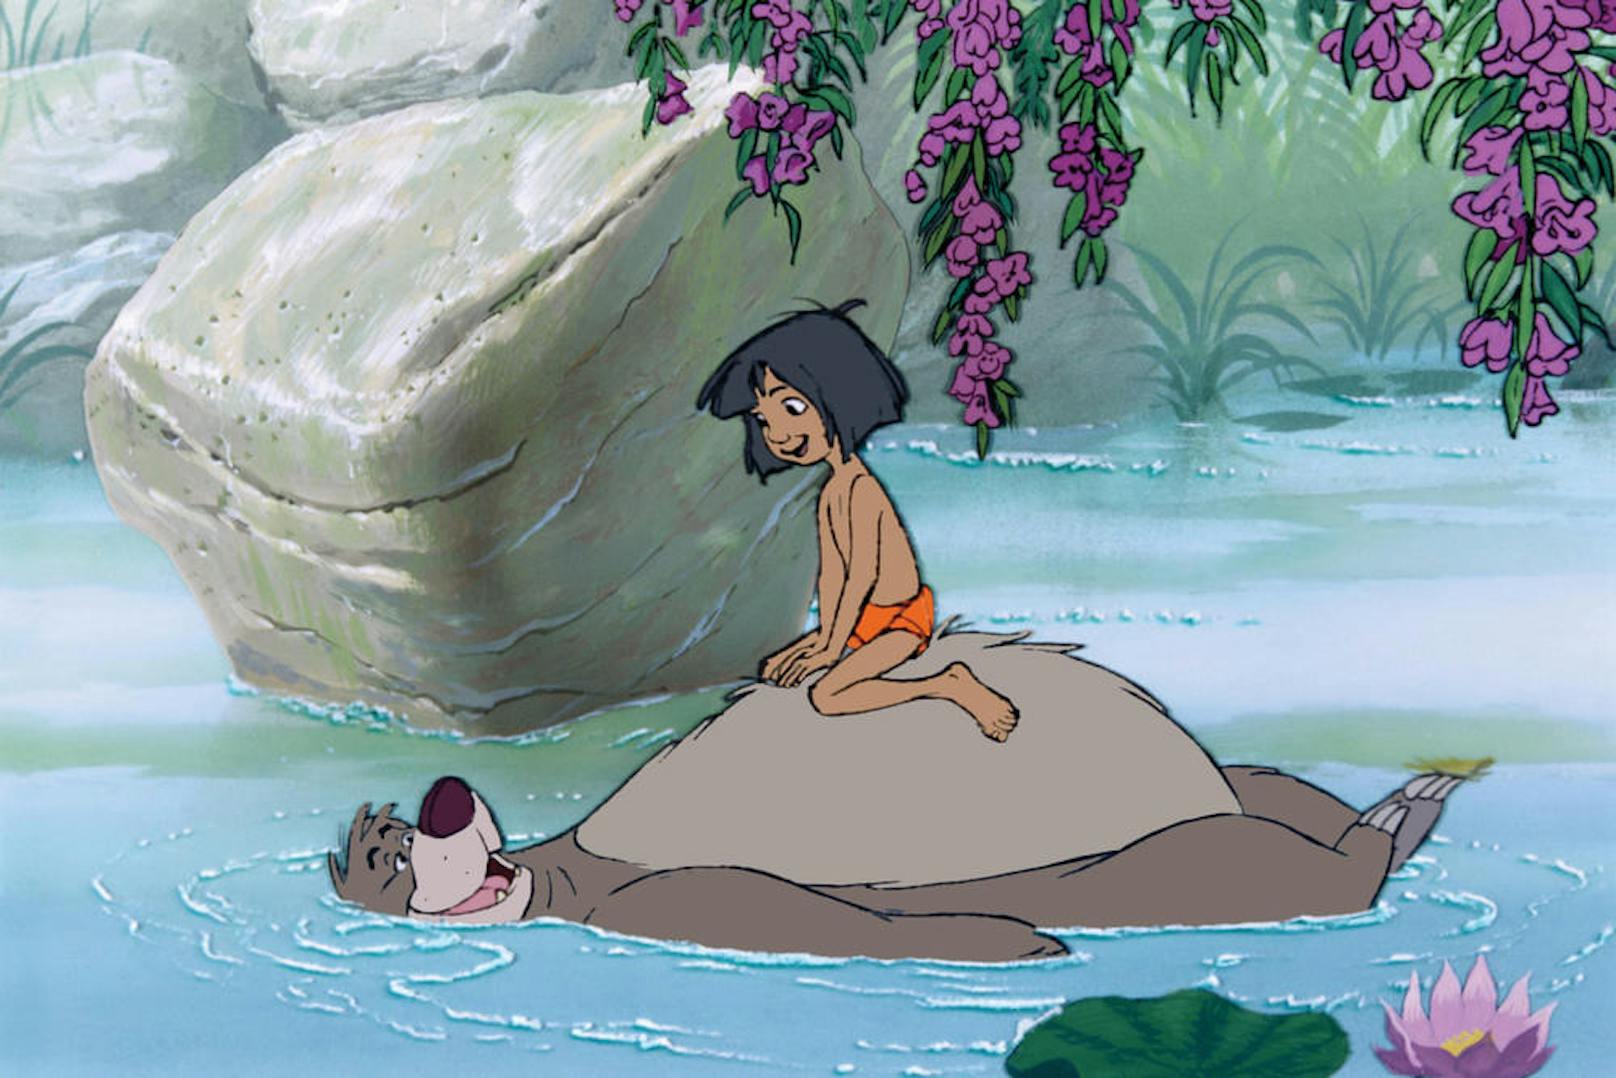 "Probier's mal mit Gemütlíchkeit": Der Zeichentrickfilm "Das Dschungelbuch" (1967) erzählt die Geschichte des Menschenkinds Mogli, das im tiefen indischen Dschungel aufwächst.